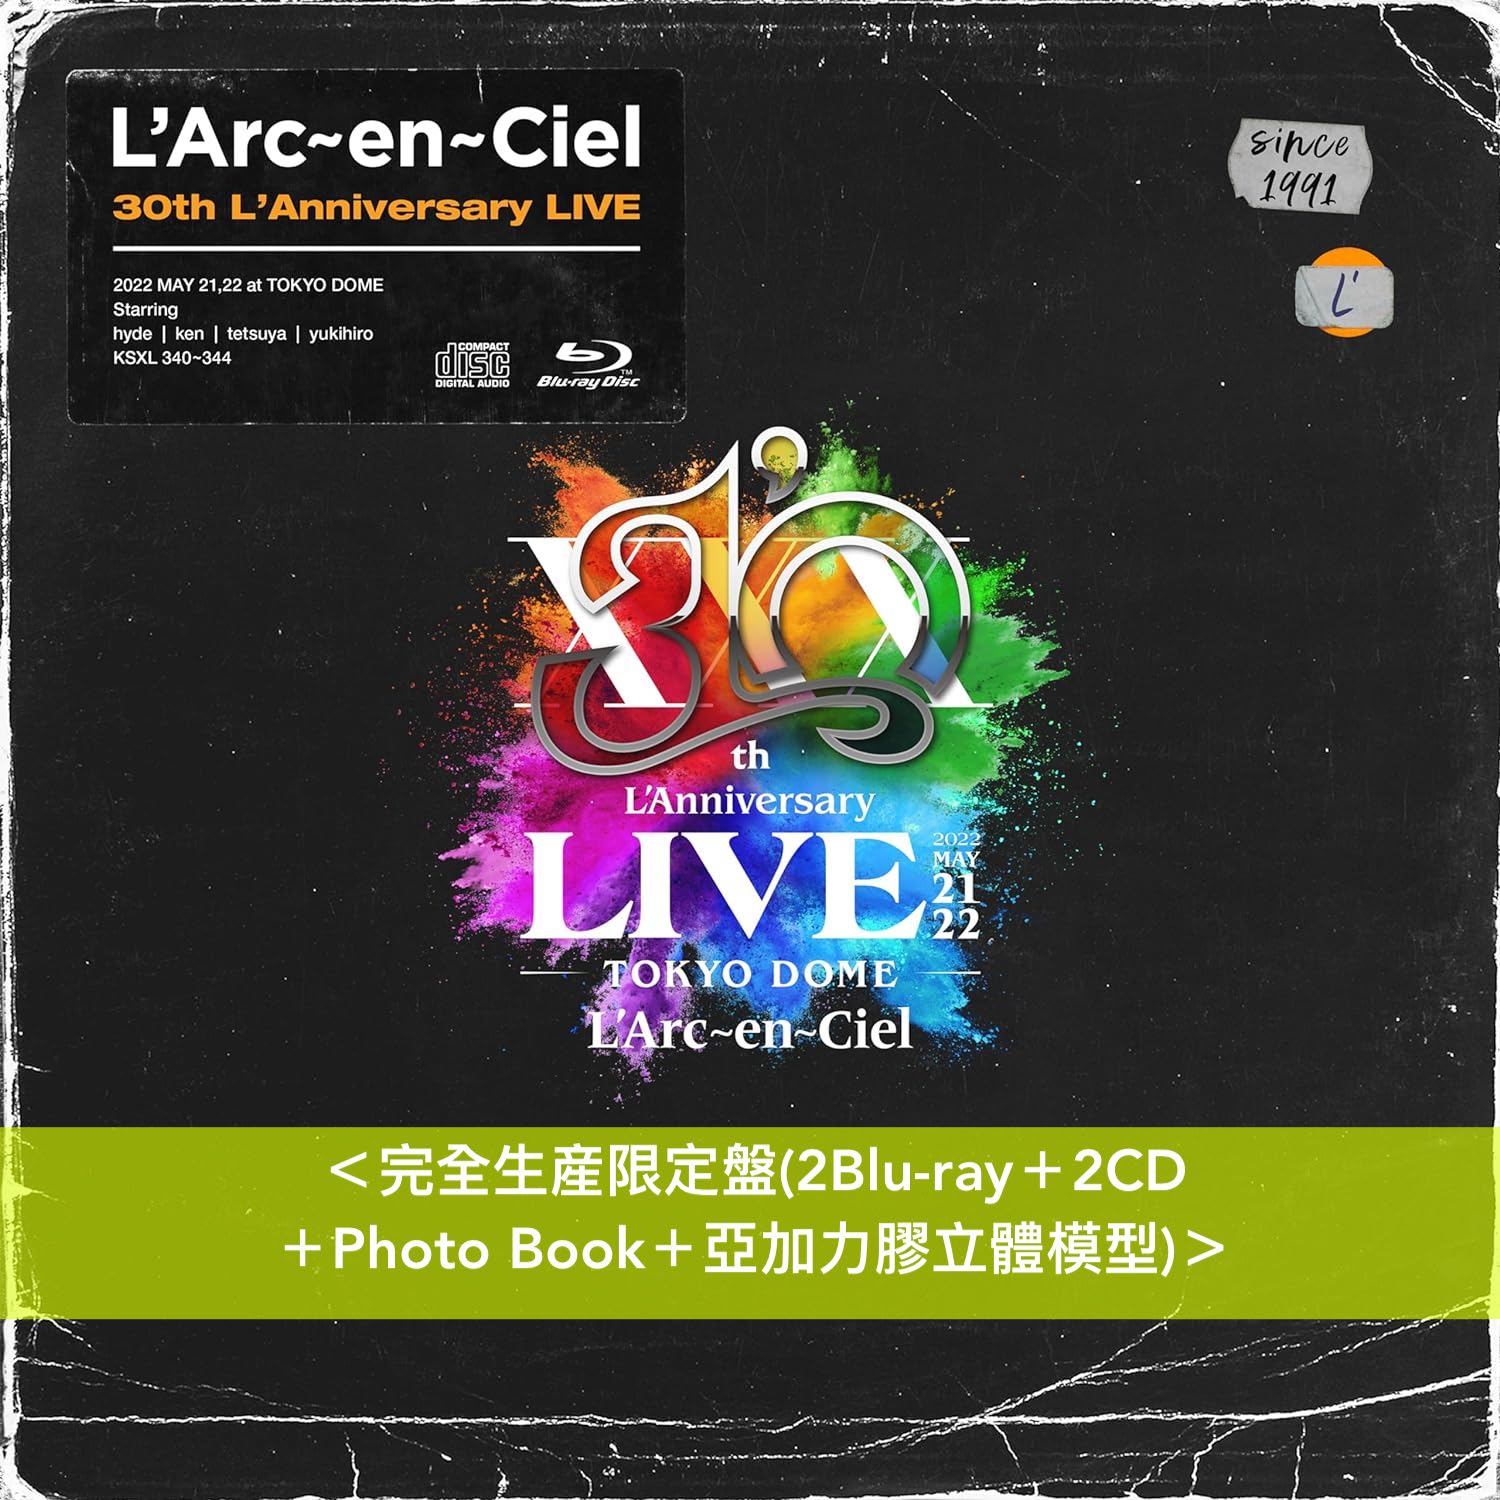 L'Arc～en～Ciel 成立30周年紀念Live《L'Arc〜en〜Ciel 30th L 